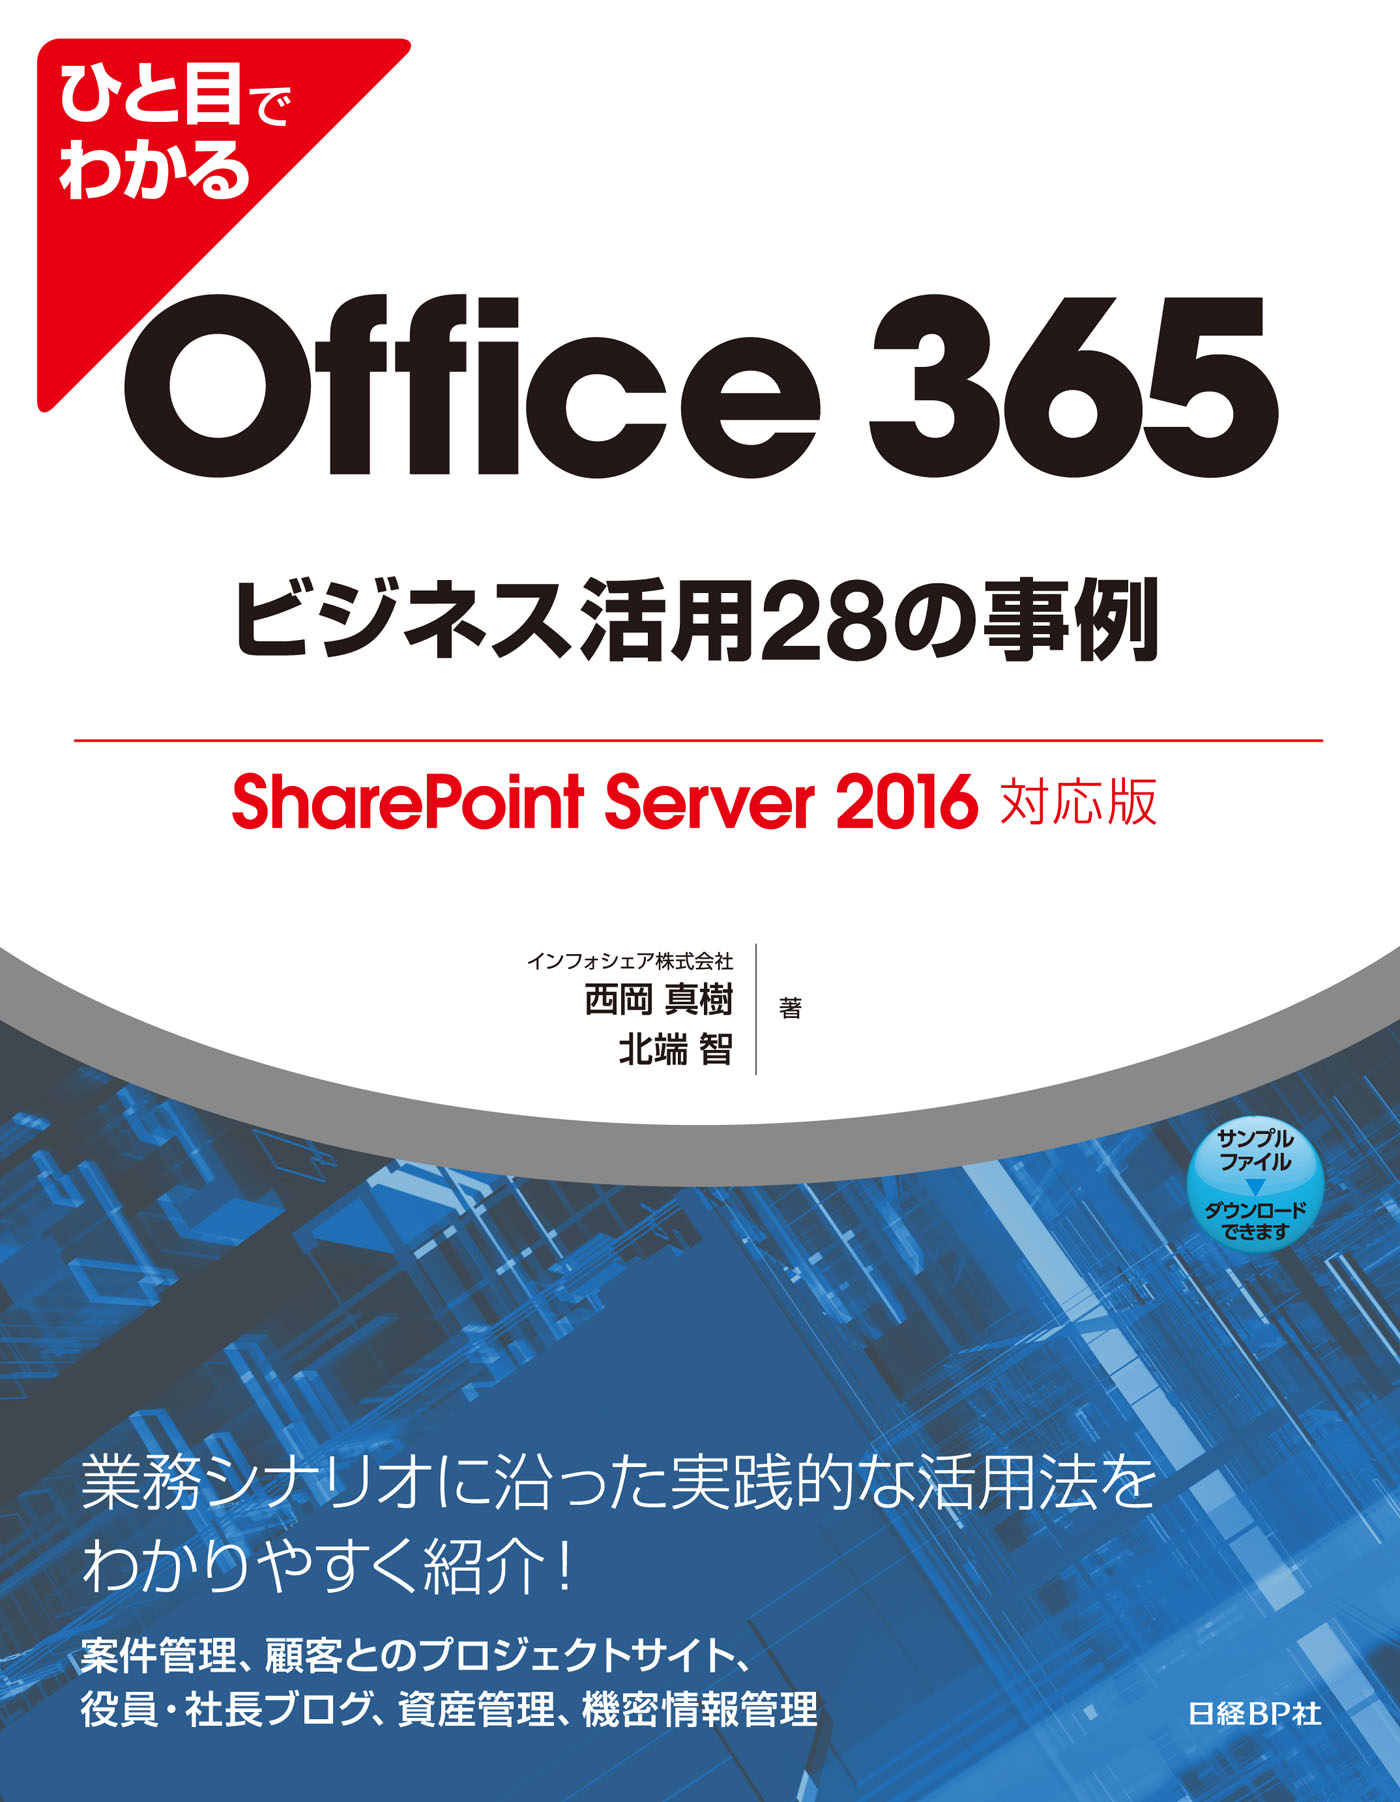 ひと目でわかるOffice 365ビジネス活用28の事例 SharePoint Server